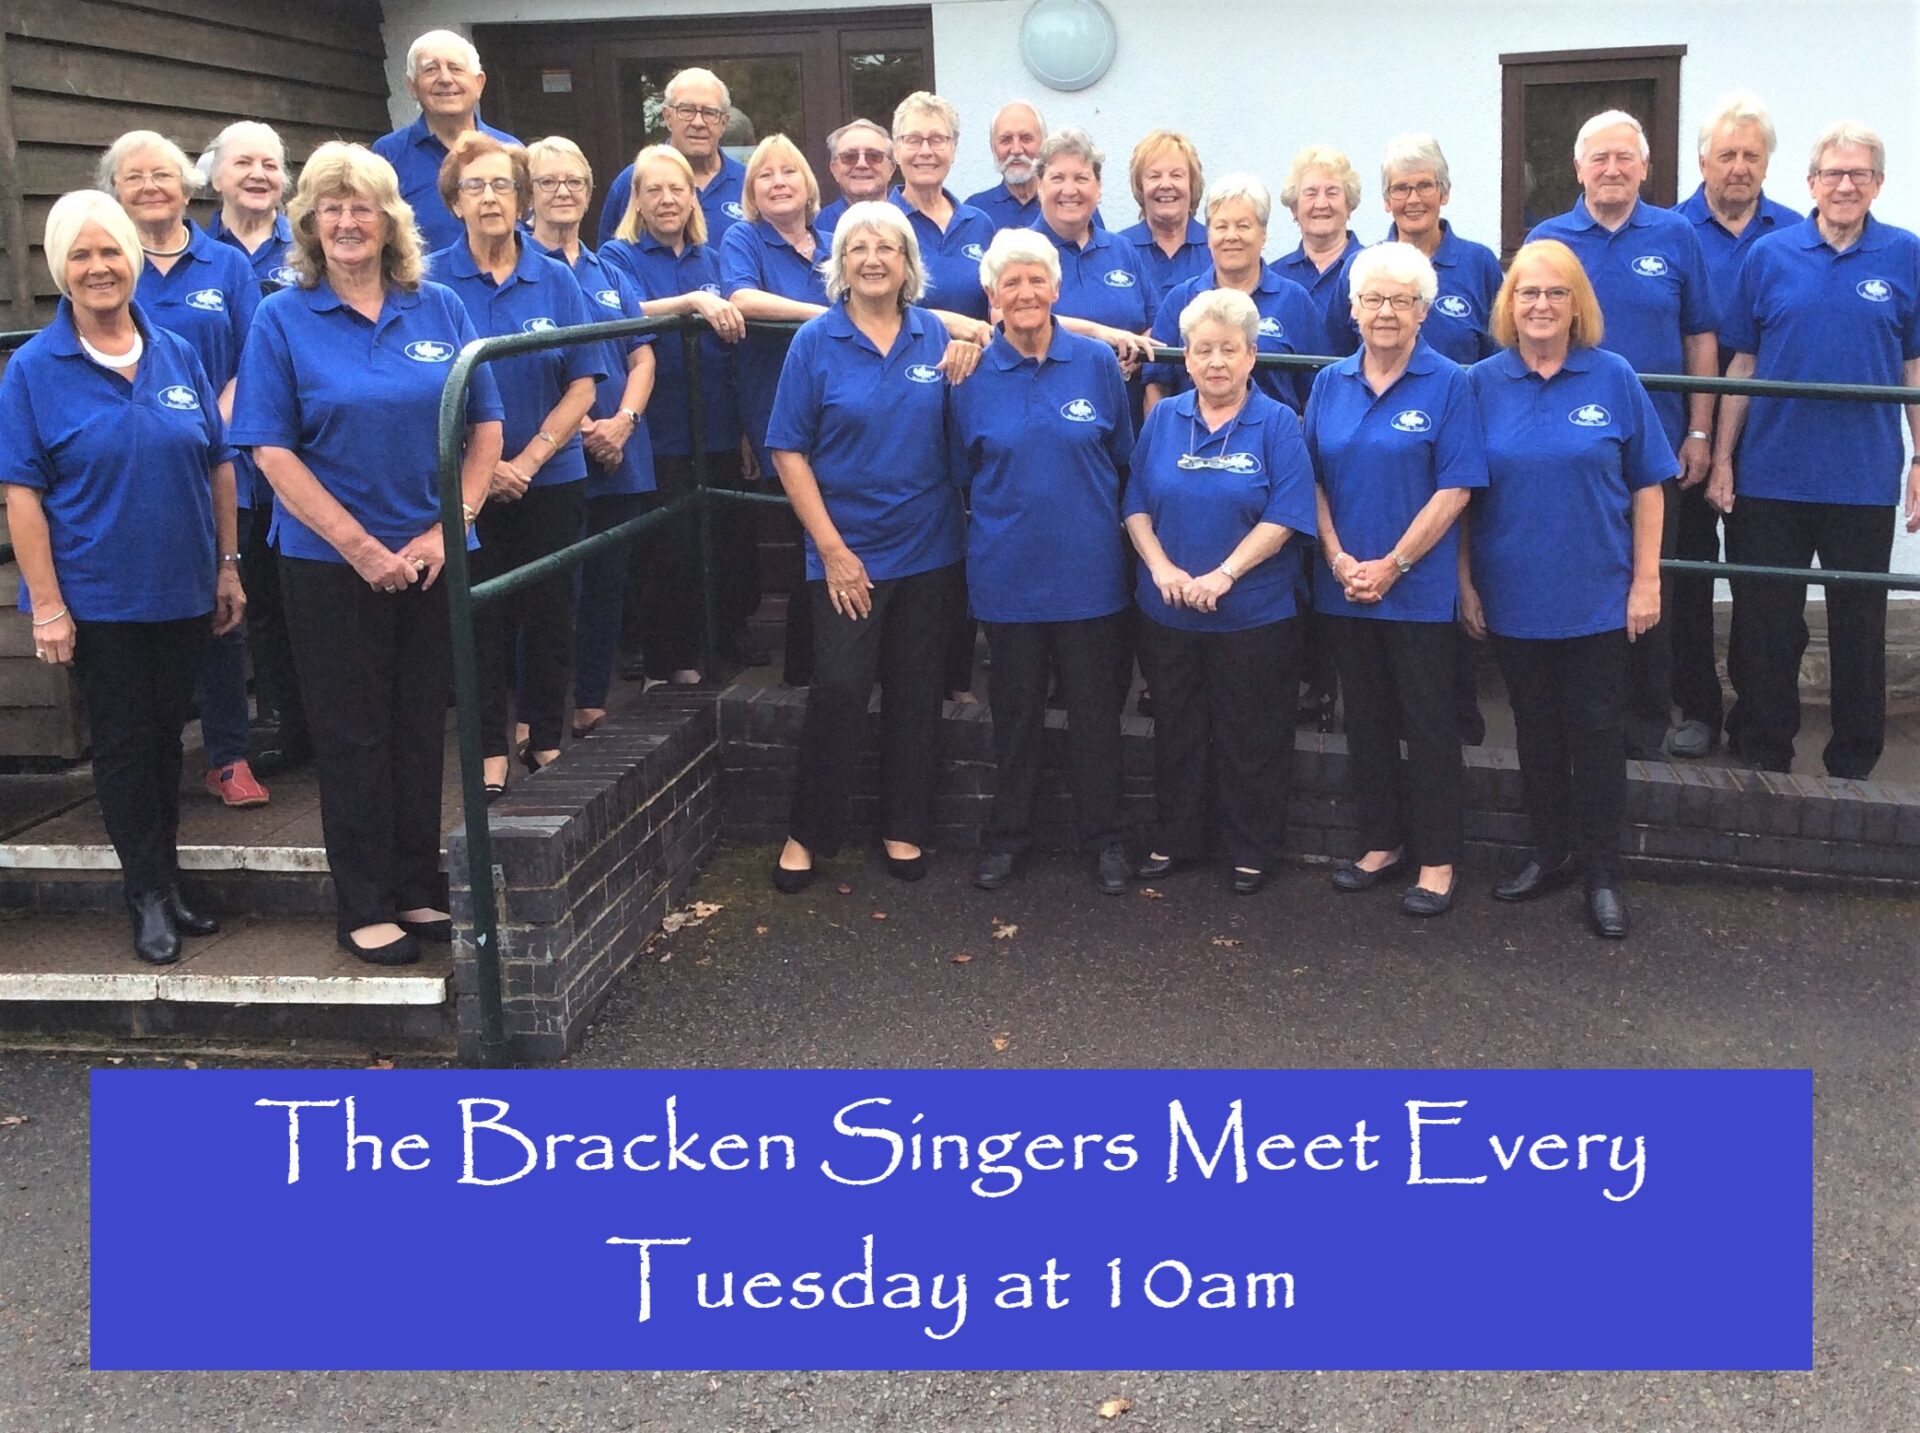 The Bracken singers meet every Tuesday at 10am.